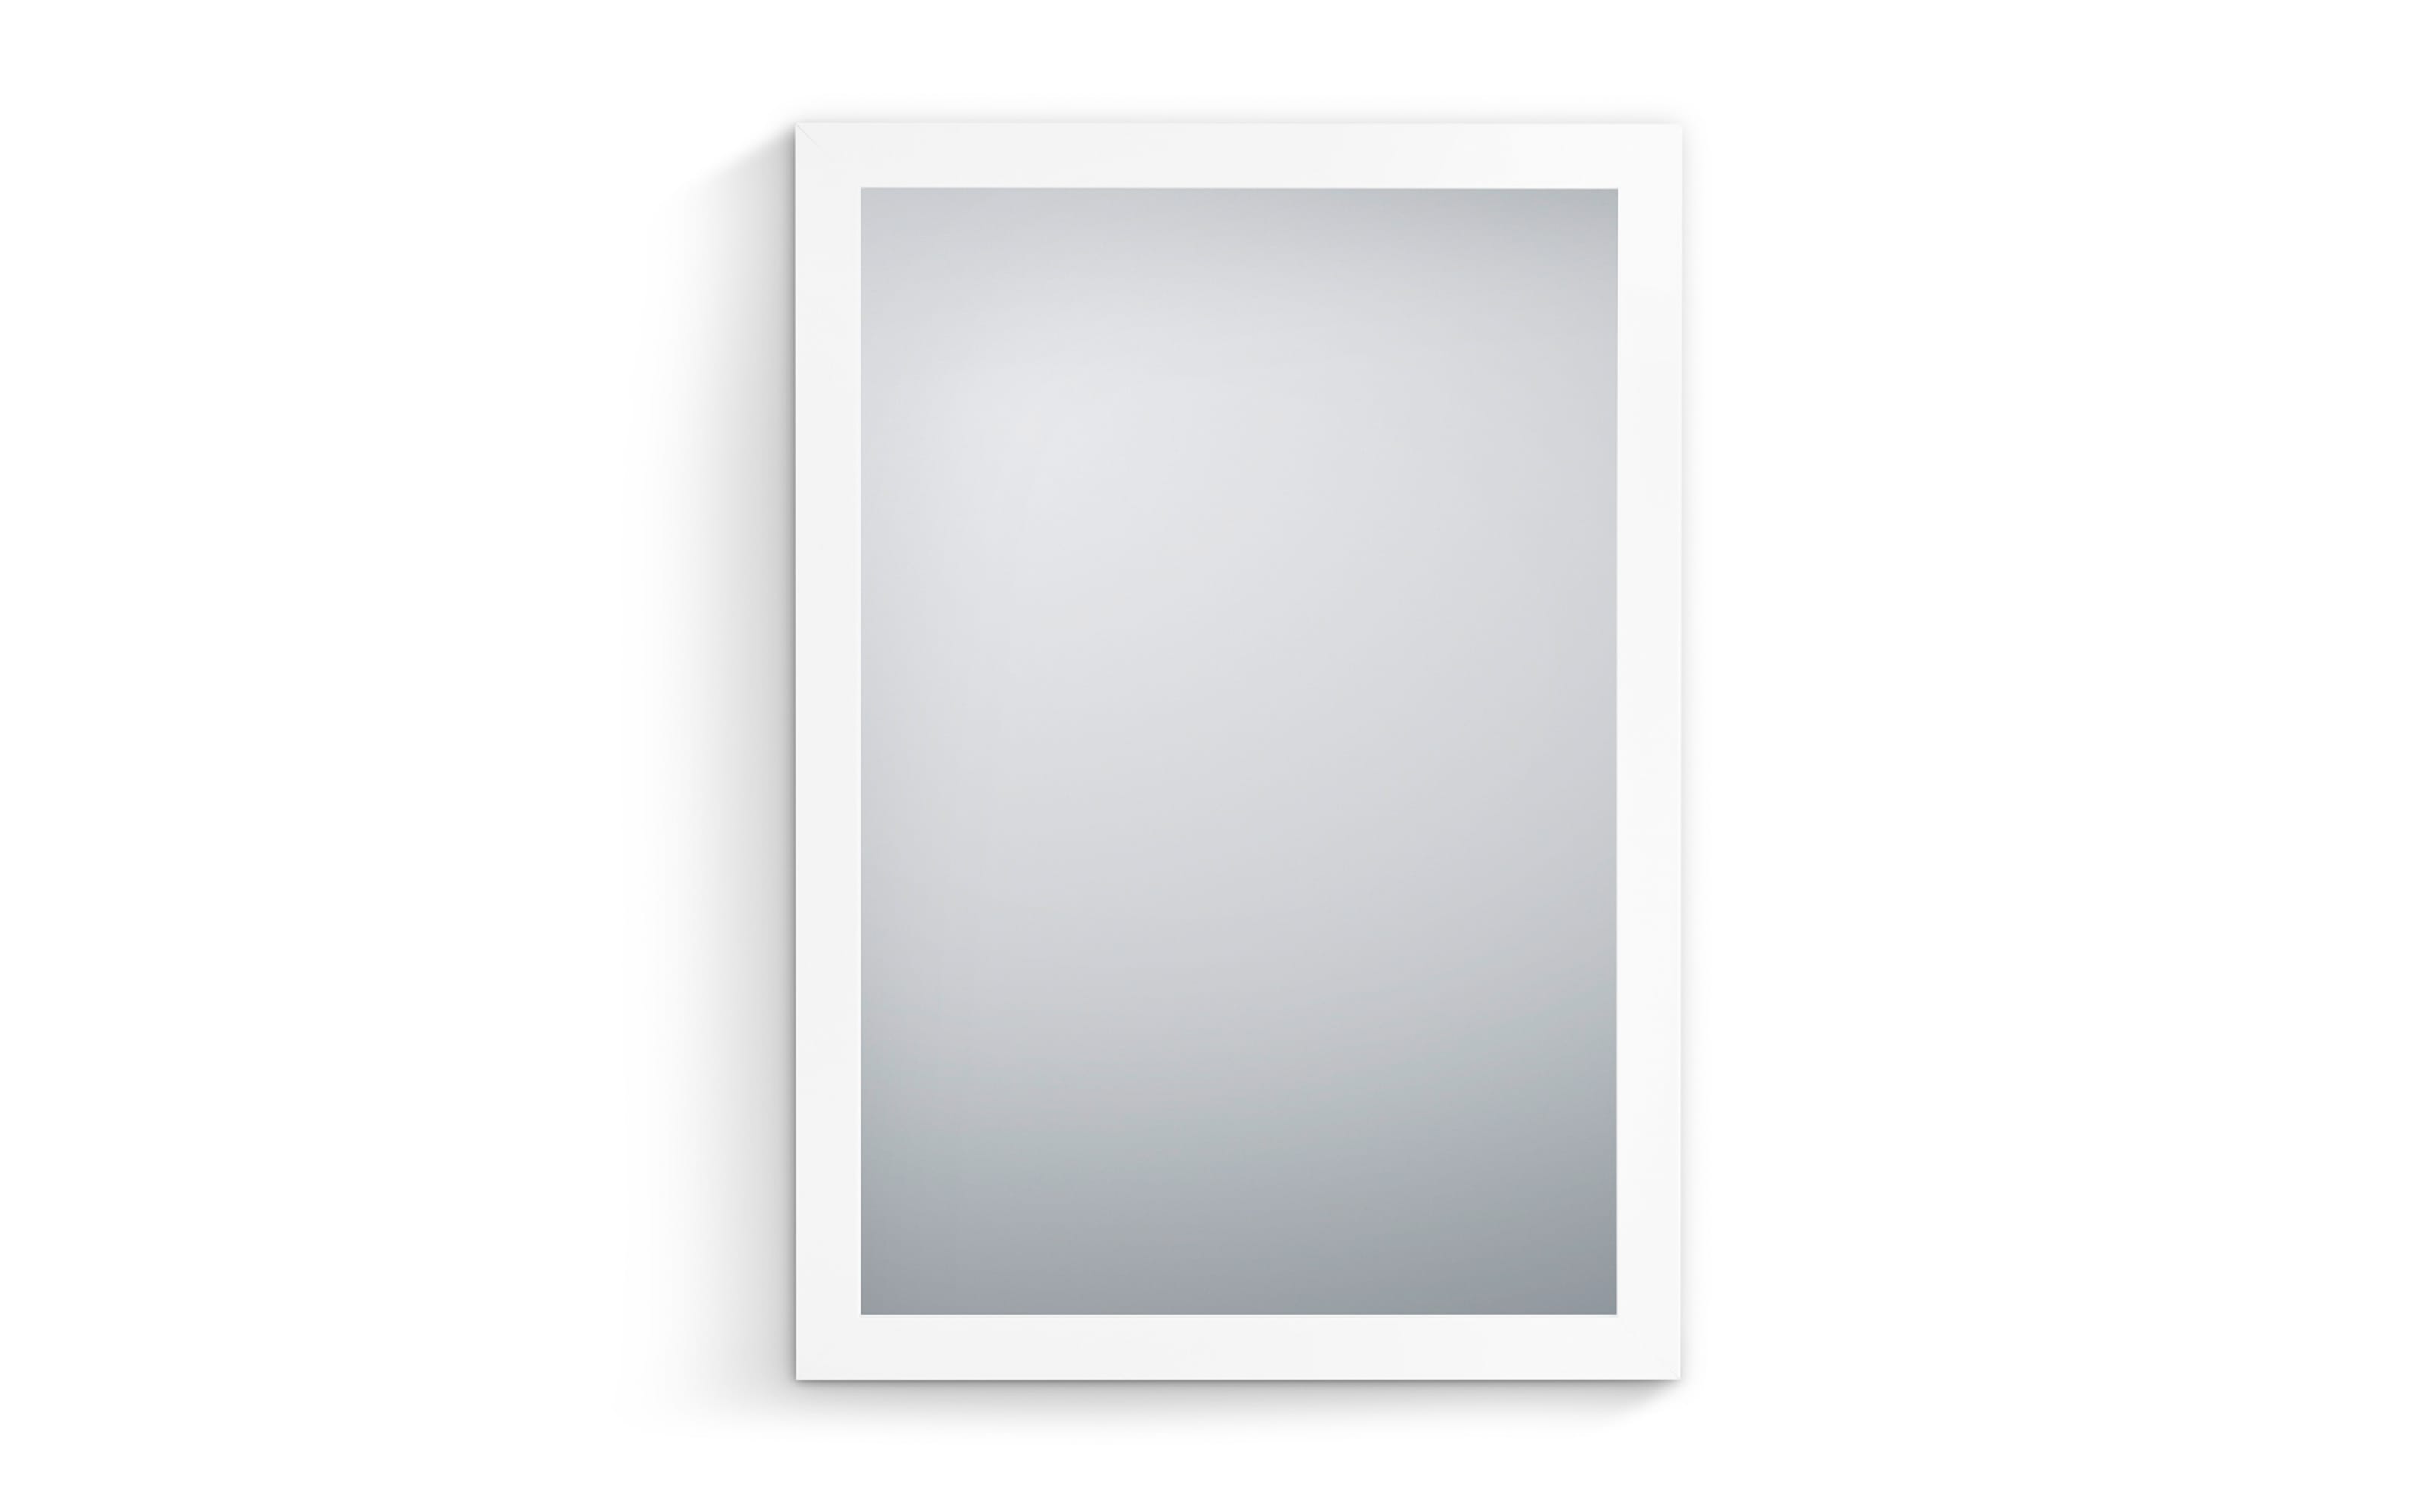 Rahmenspiegel Thea, weiß, 48 x 68 cm 